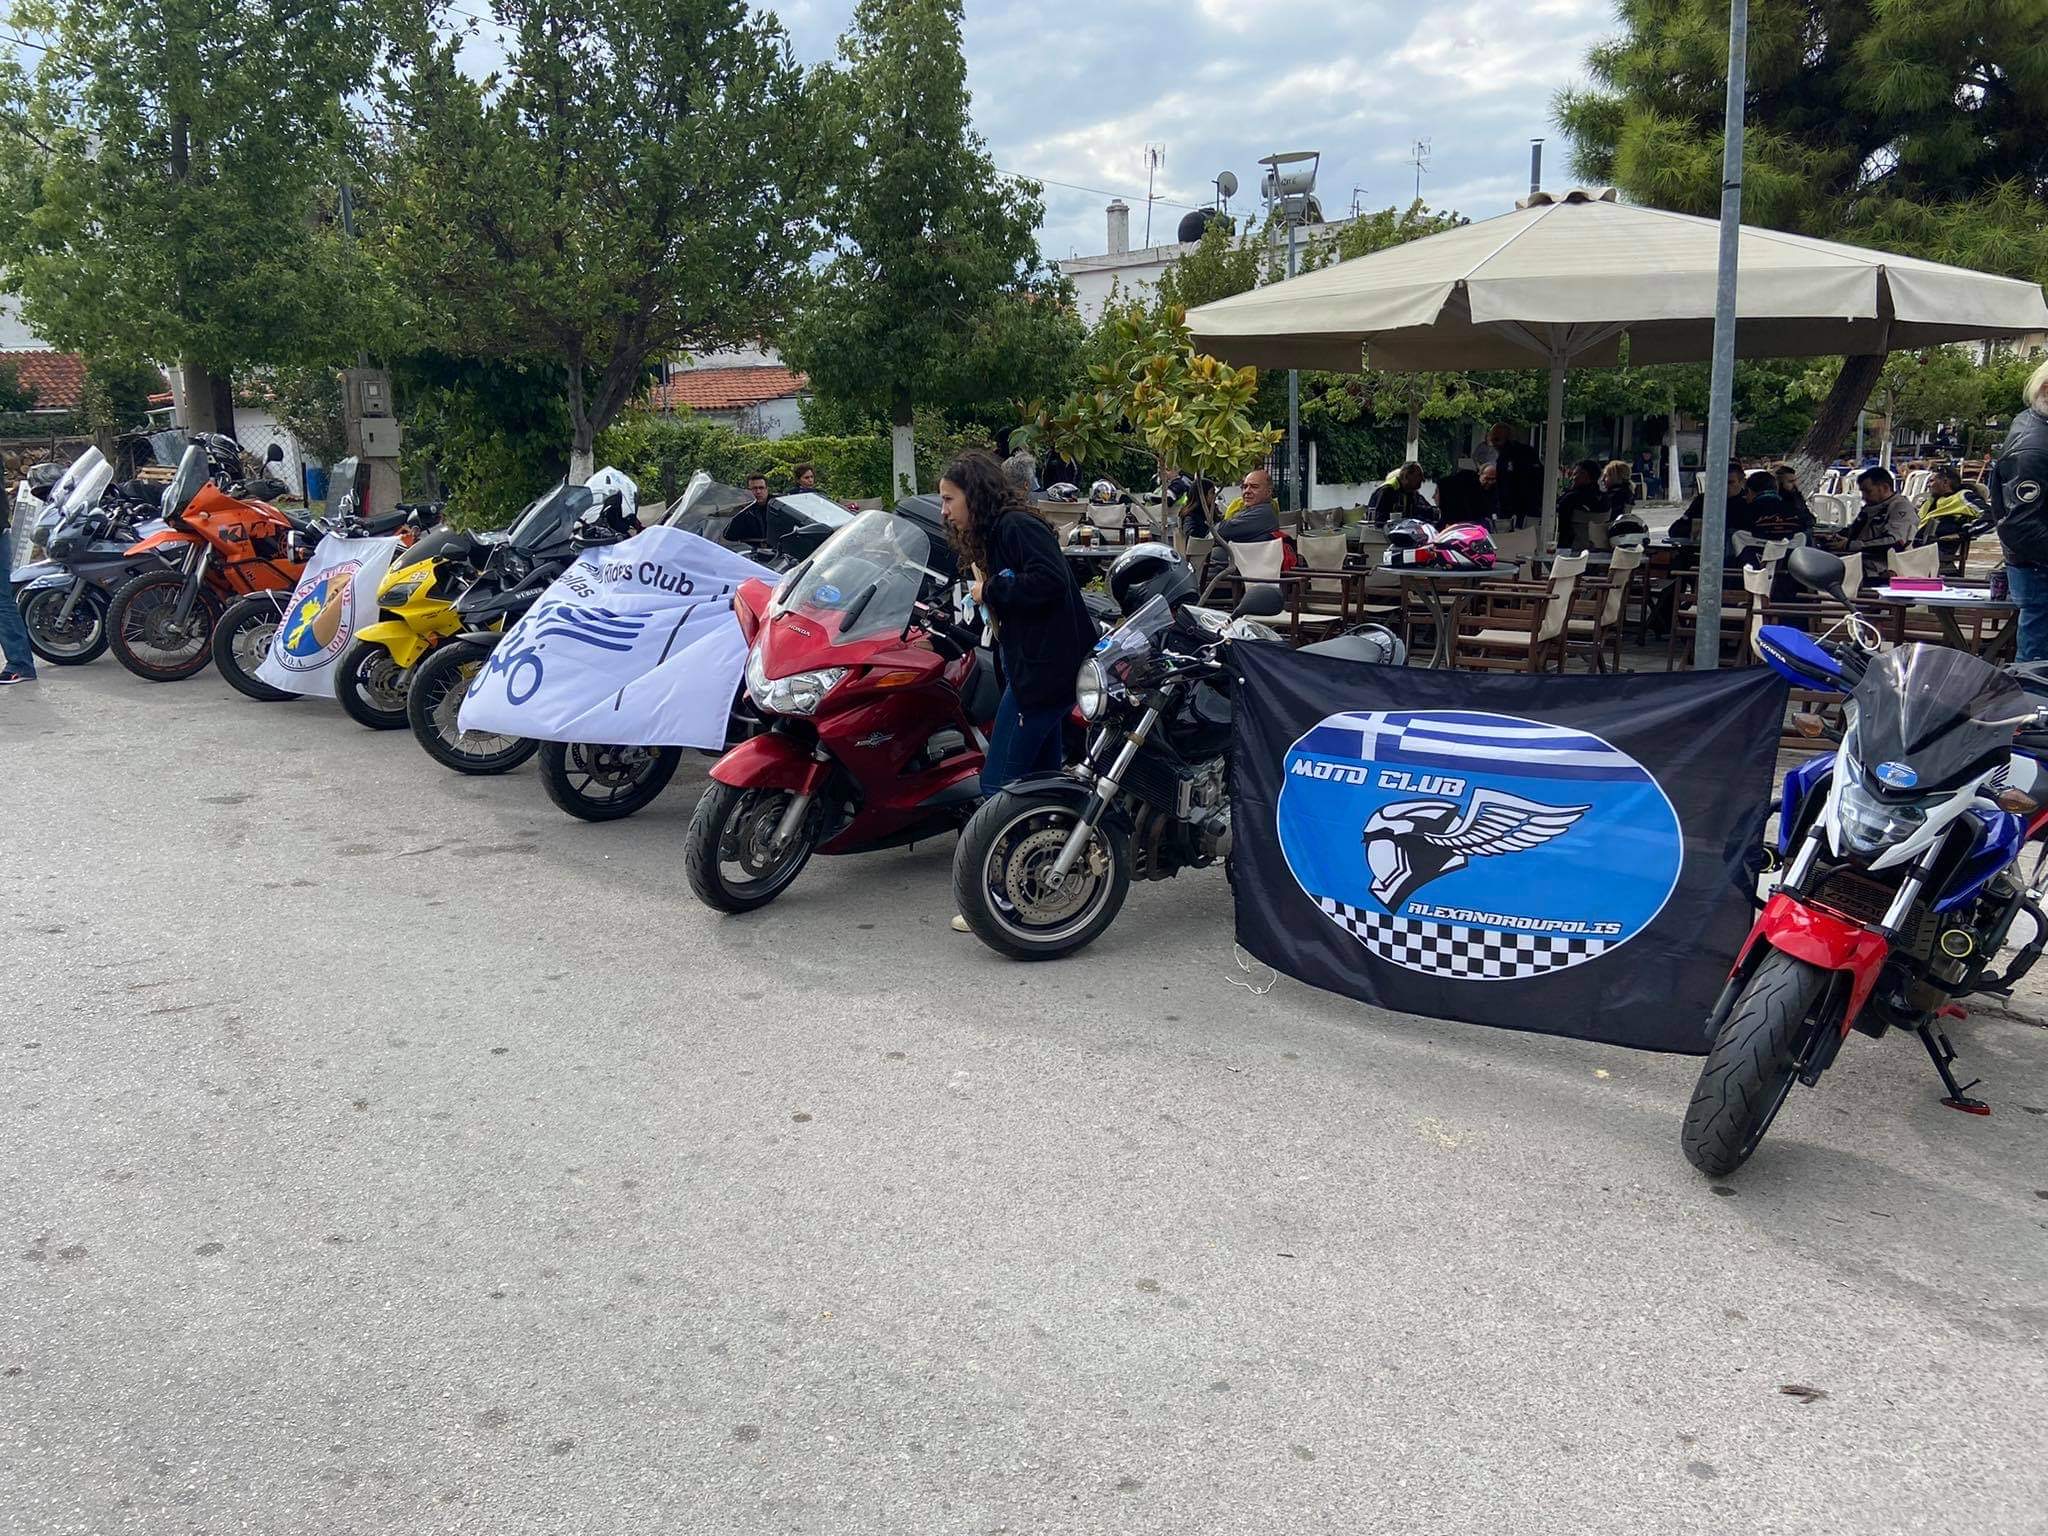 Οι μοτοσικλετιστές ξαναζωντάνεψαν την τοπική αγορά στις Ροβιές